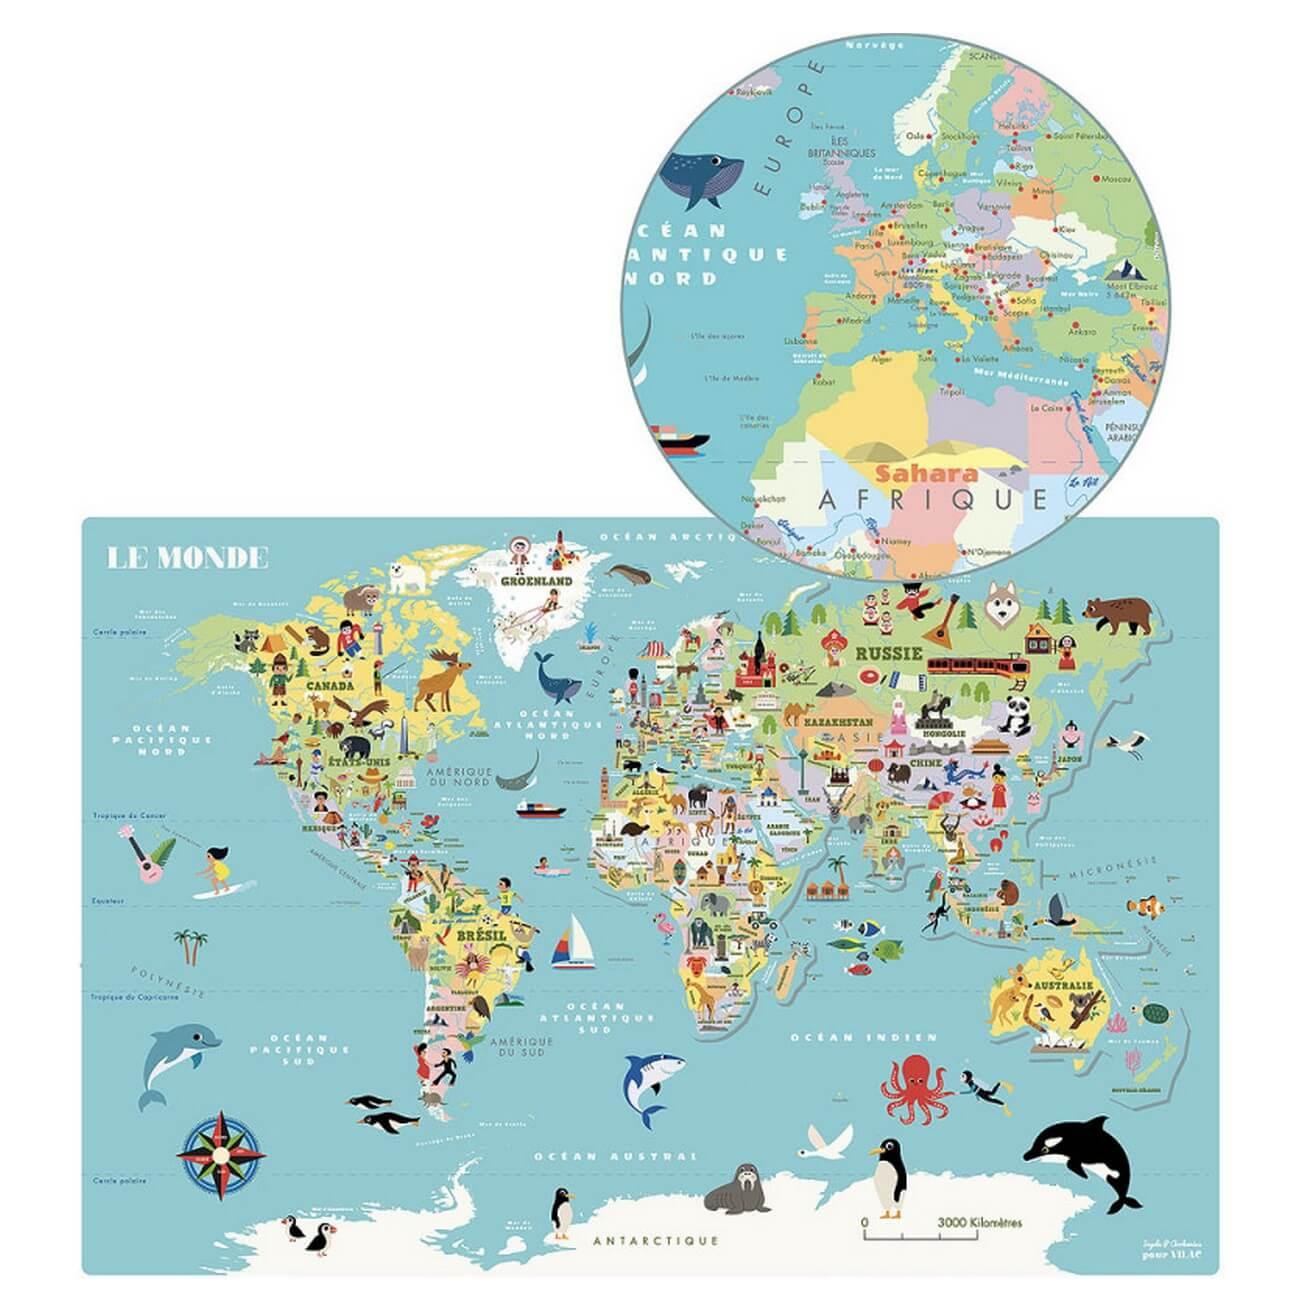 Vilac - Puzzle en bois - Carte du monde magnétique